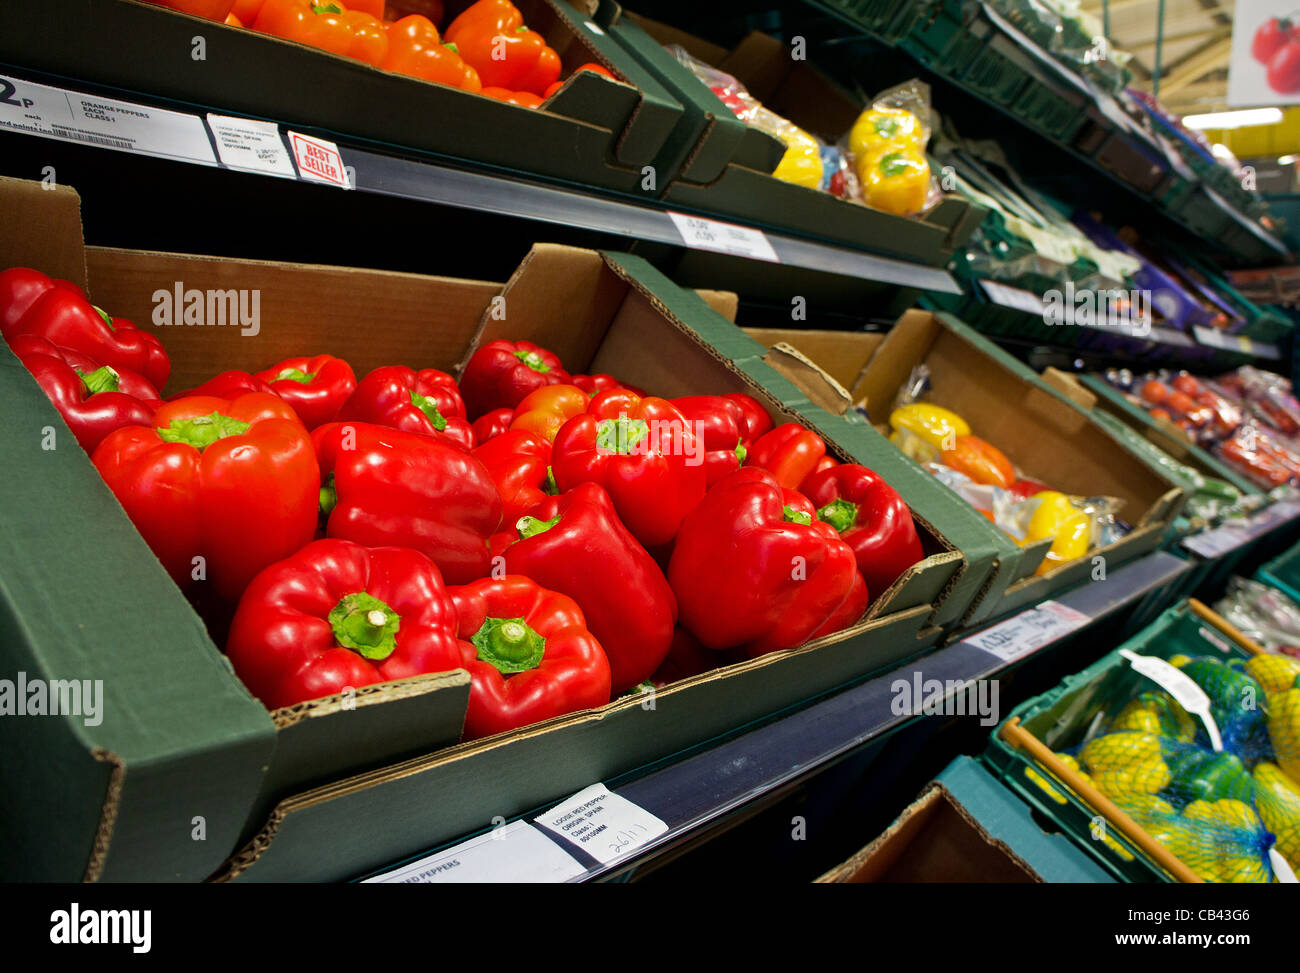 Fresco di peperoni rossi e altri prodotti ina supermercato Tesco, Regno Unito Foto Stock